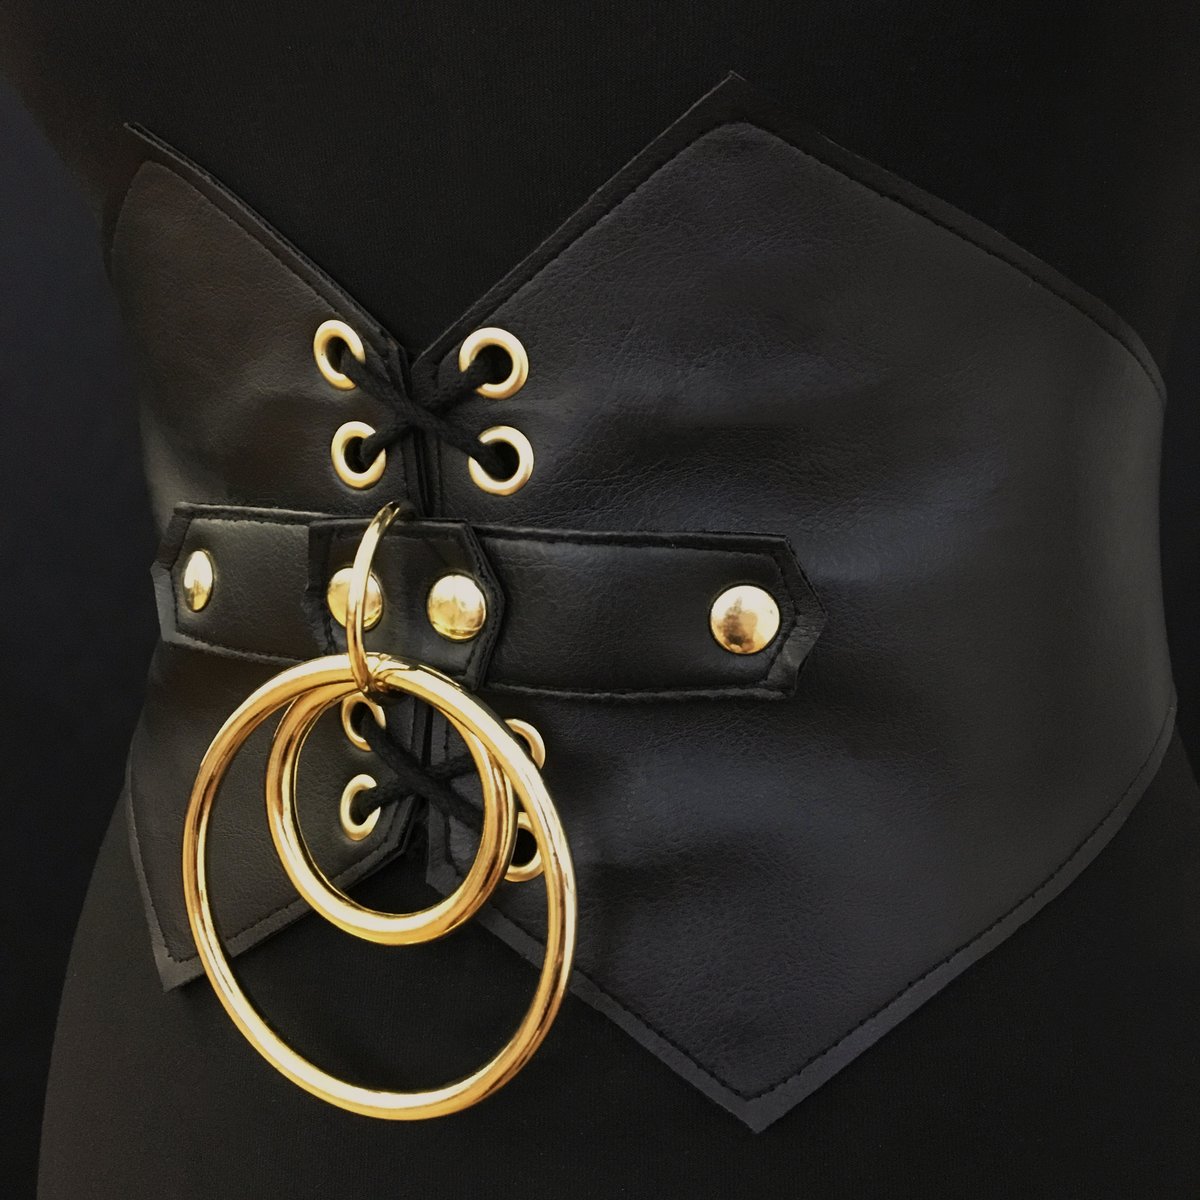 Infinity waist belt cincher gold